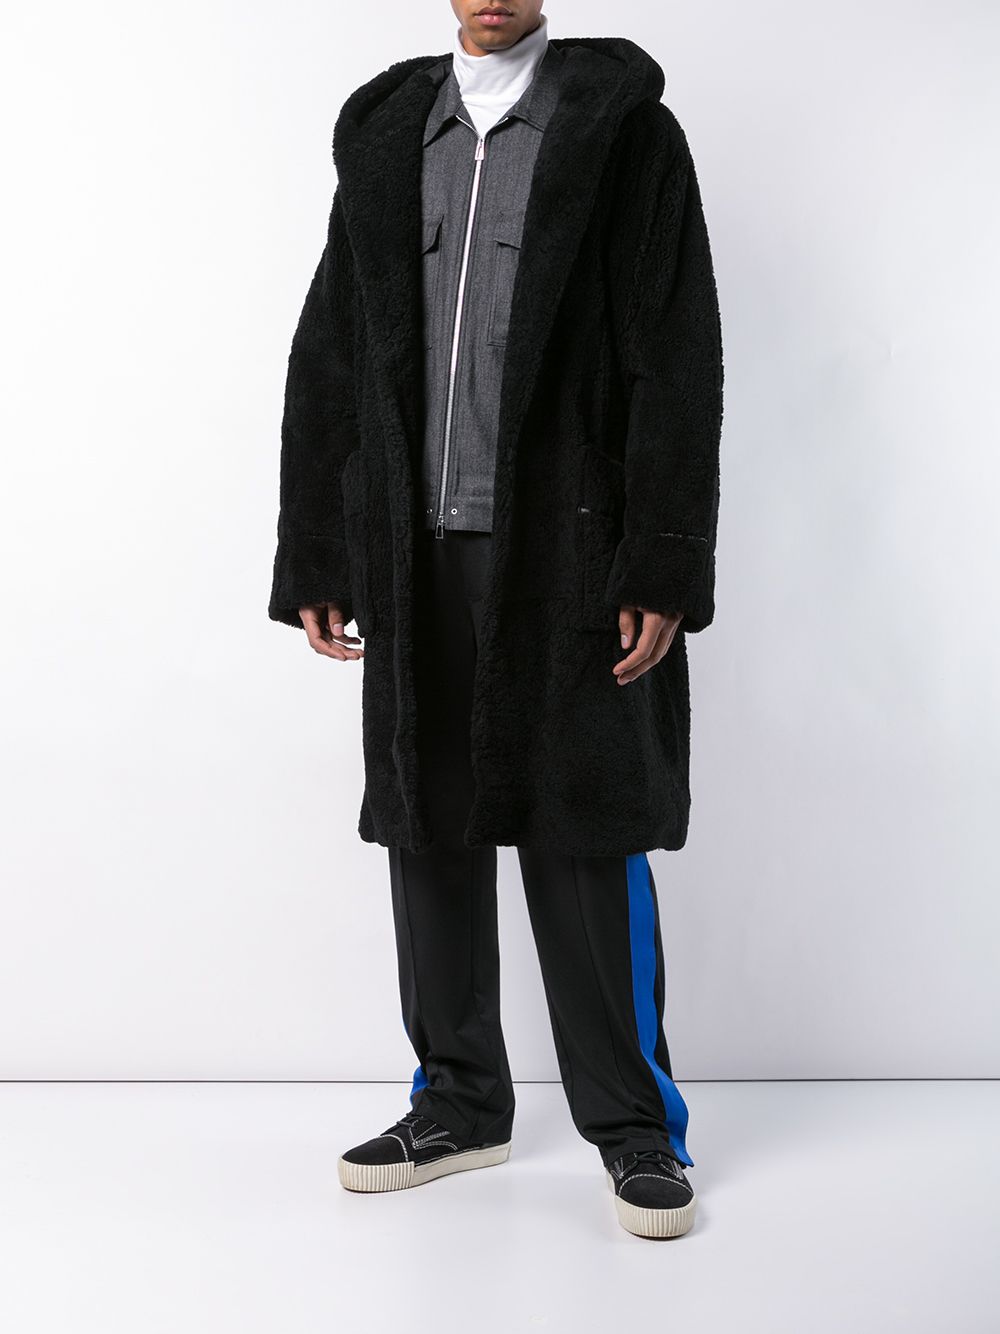 фото Alexander wang пальто в стилистике халата